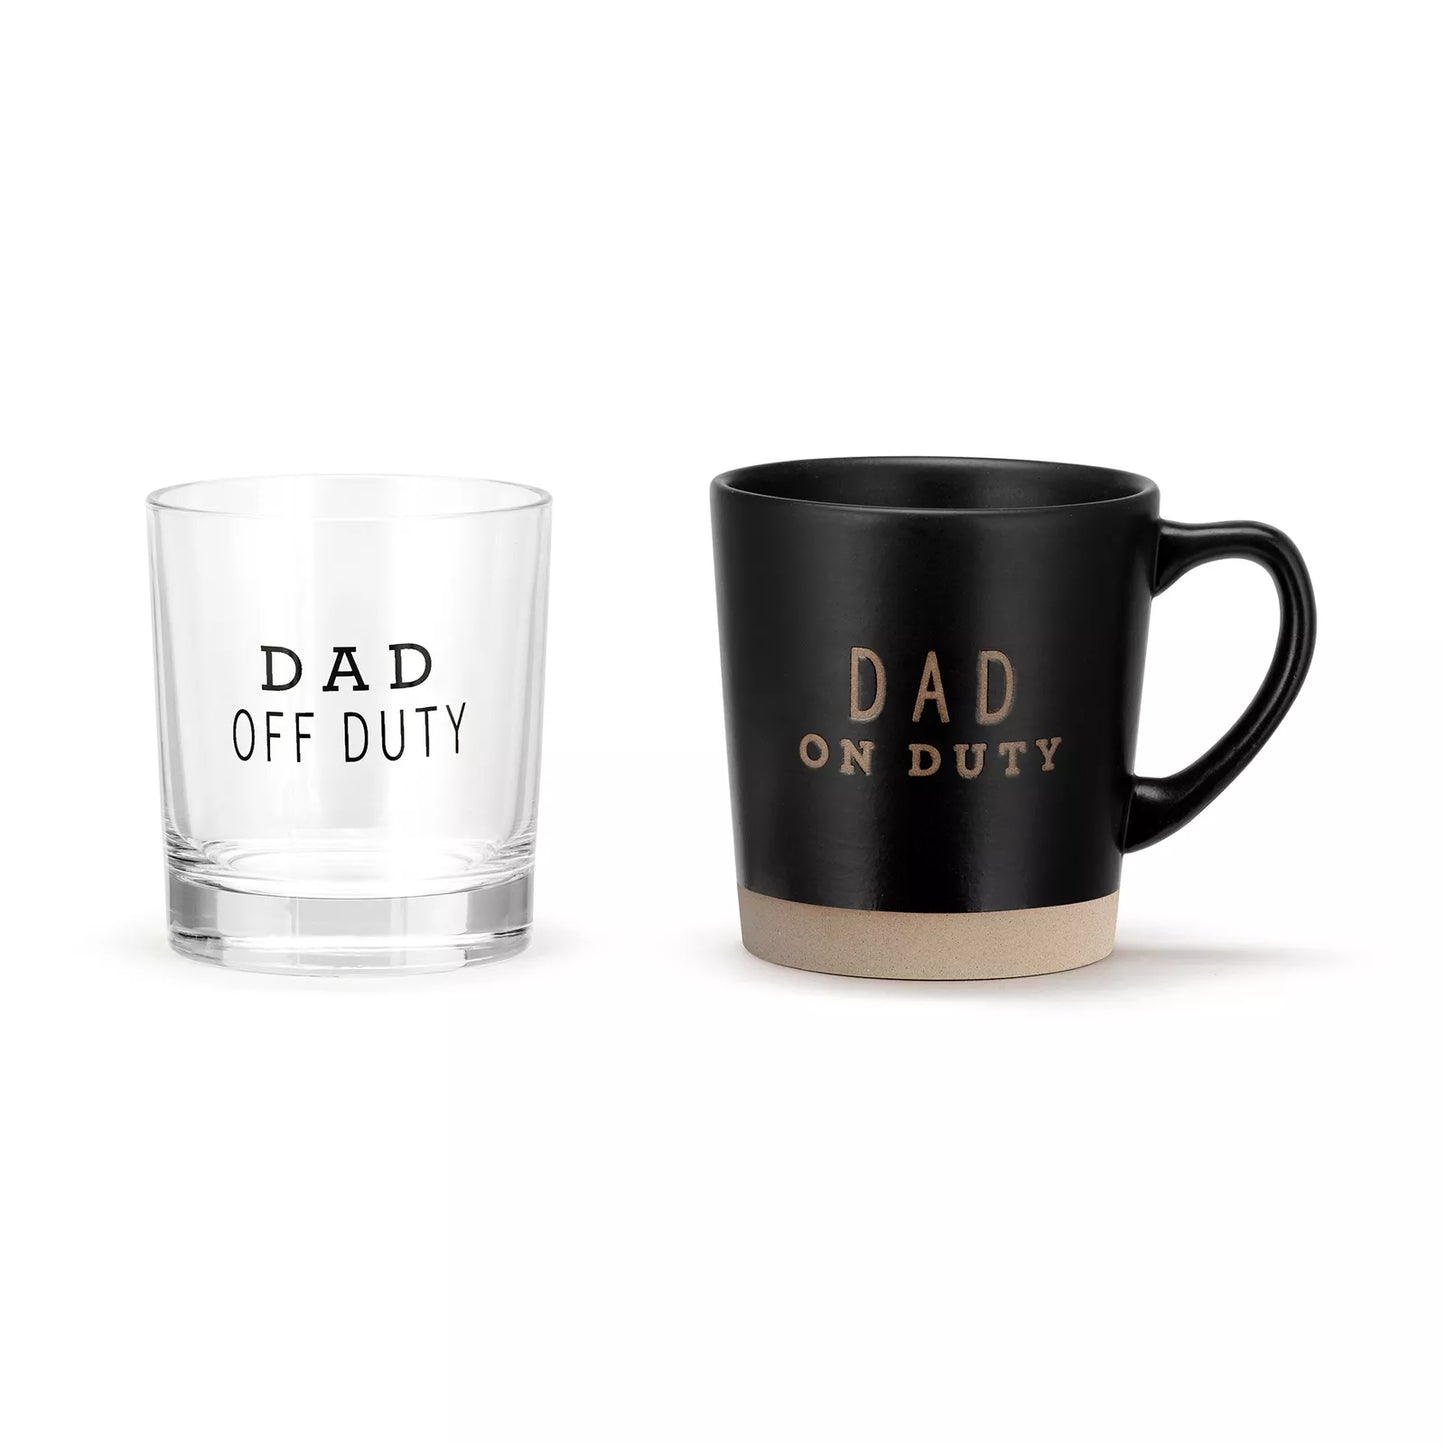 Dad On Duty, Dad off Duty Mug and Glass Set